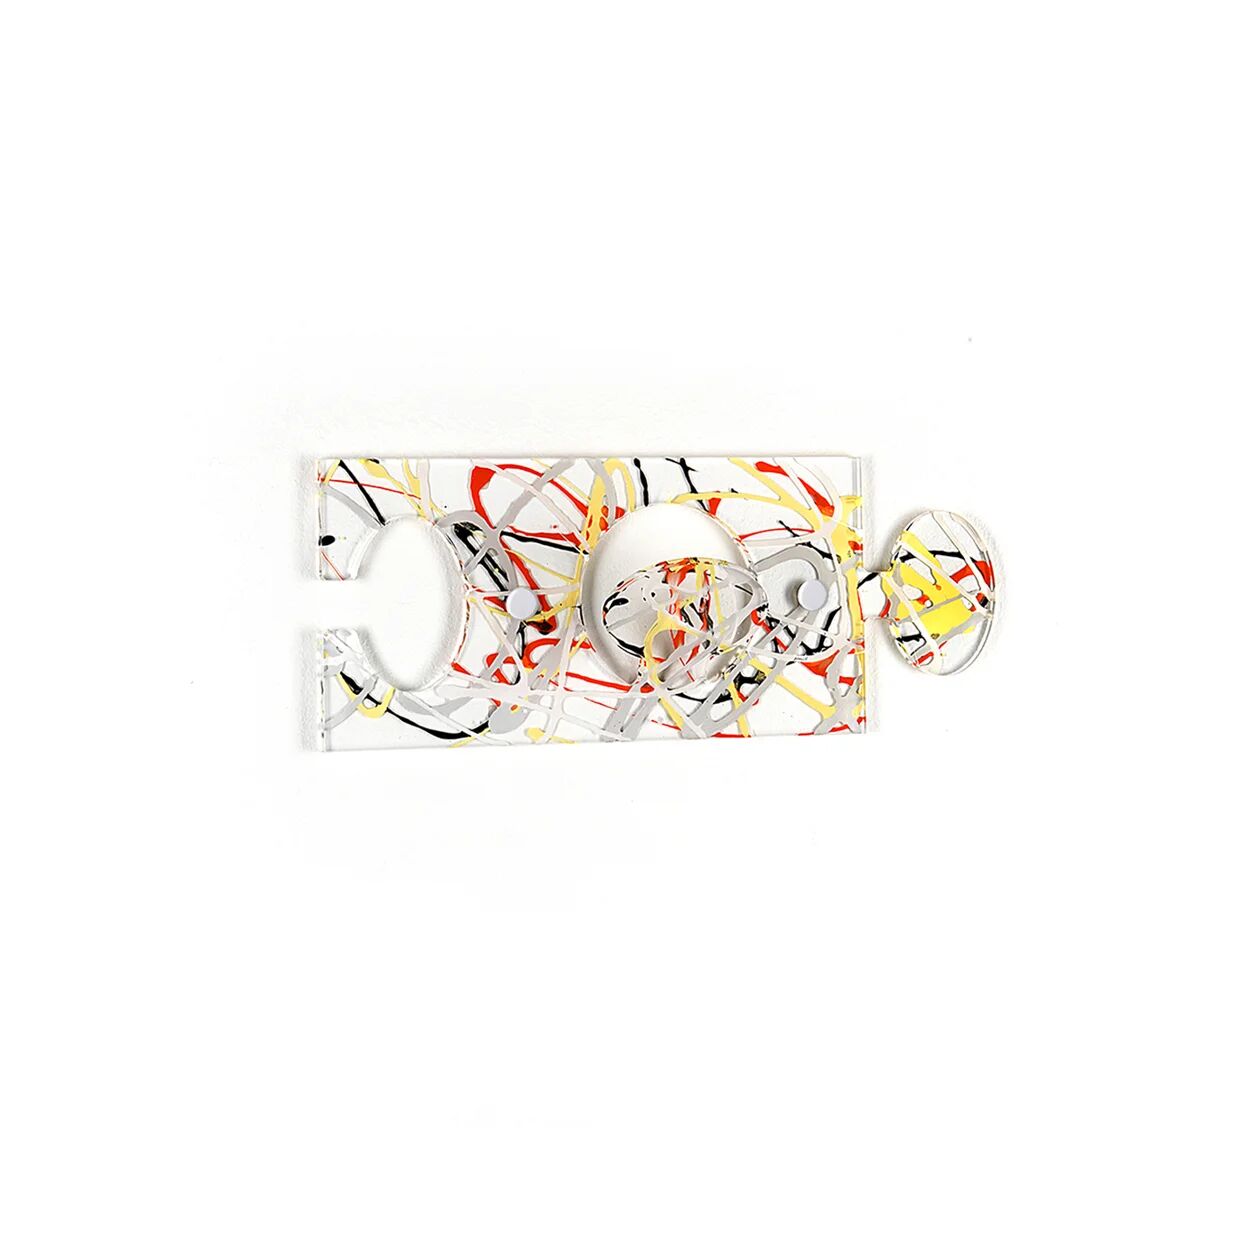 Iplex Appendino Puzzle, multicolor singolo